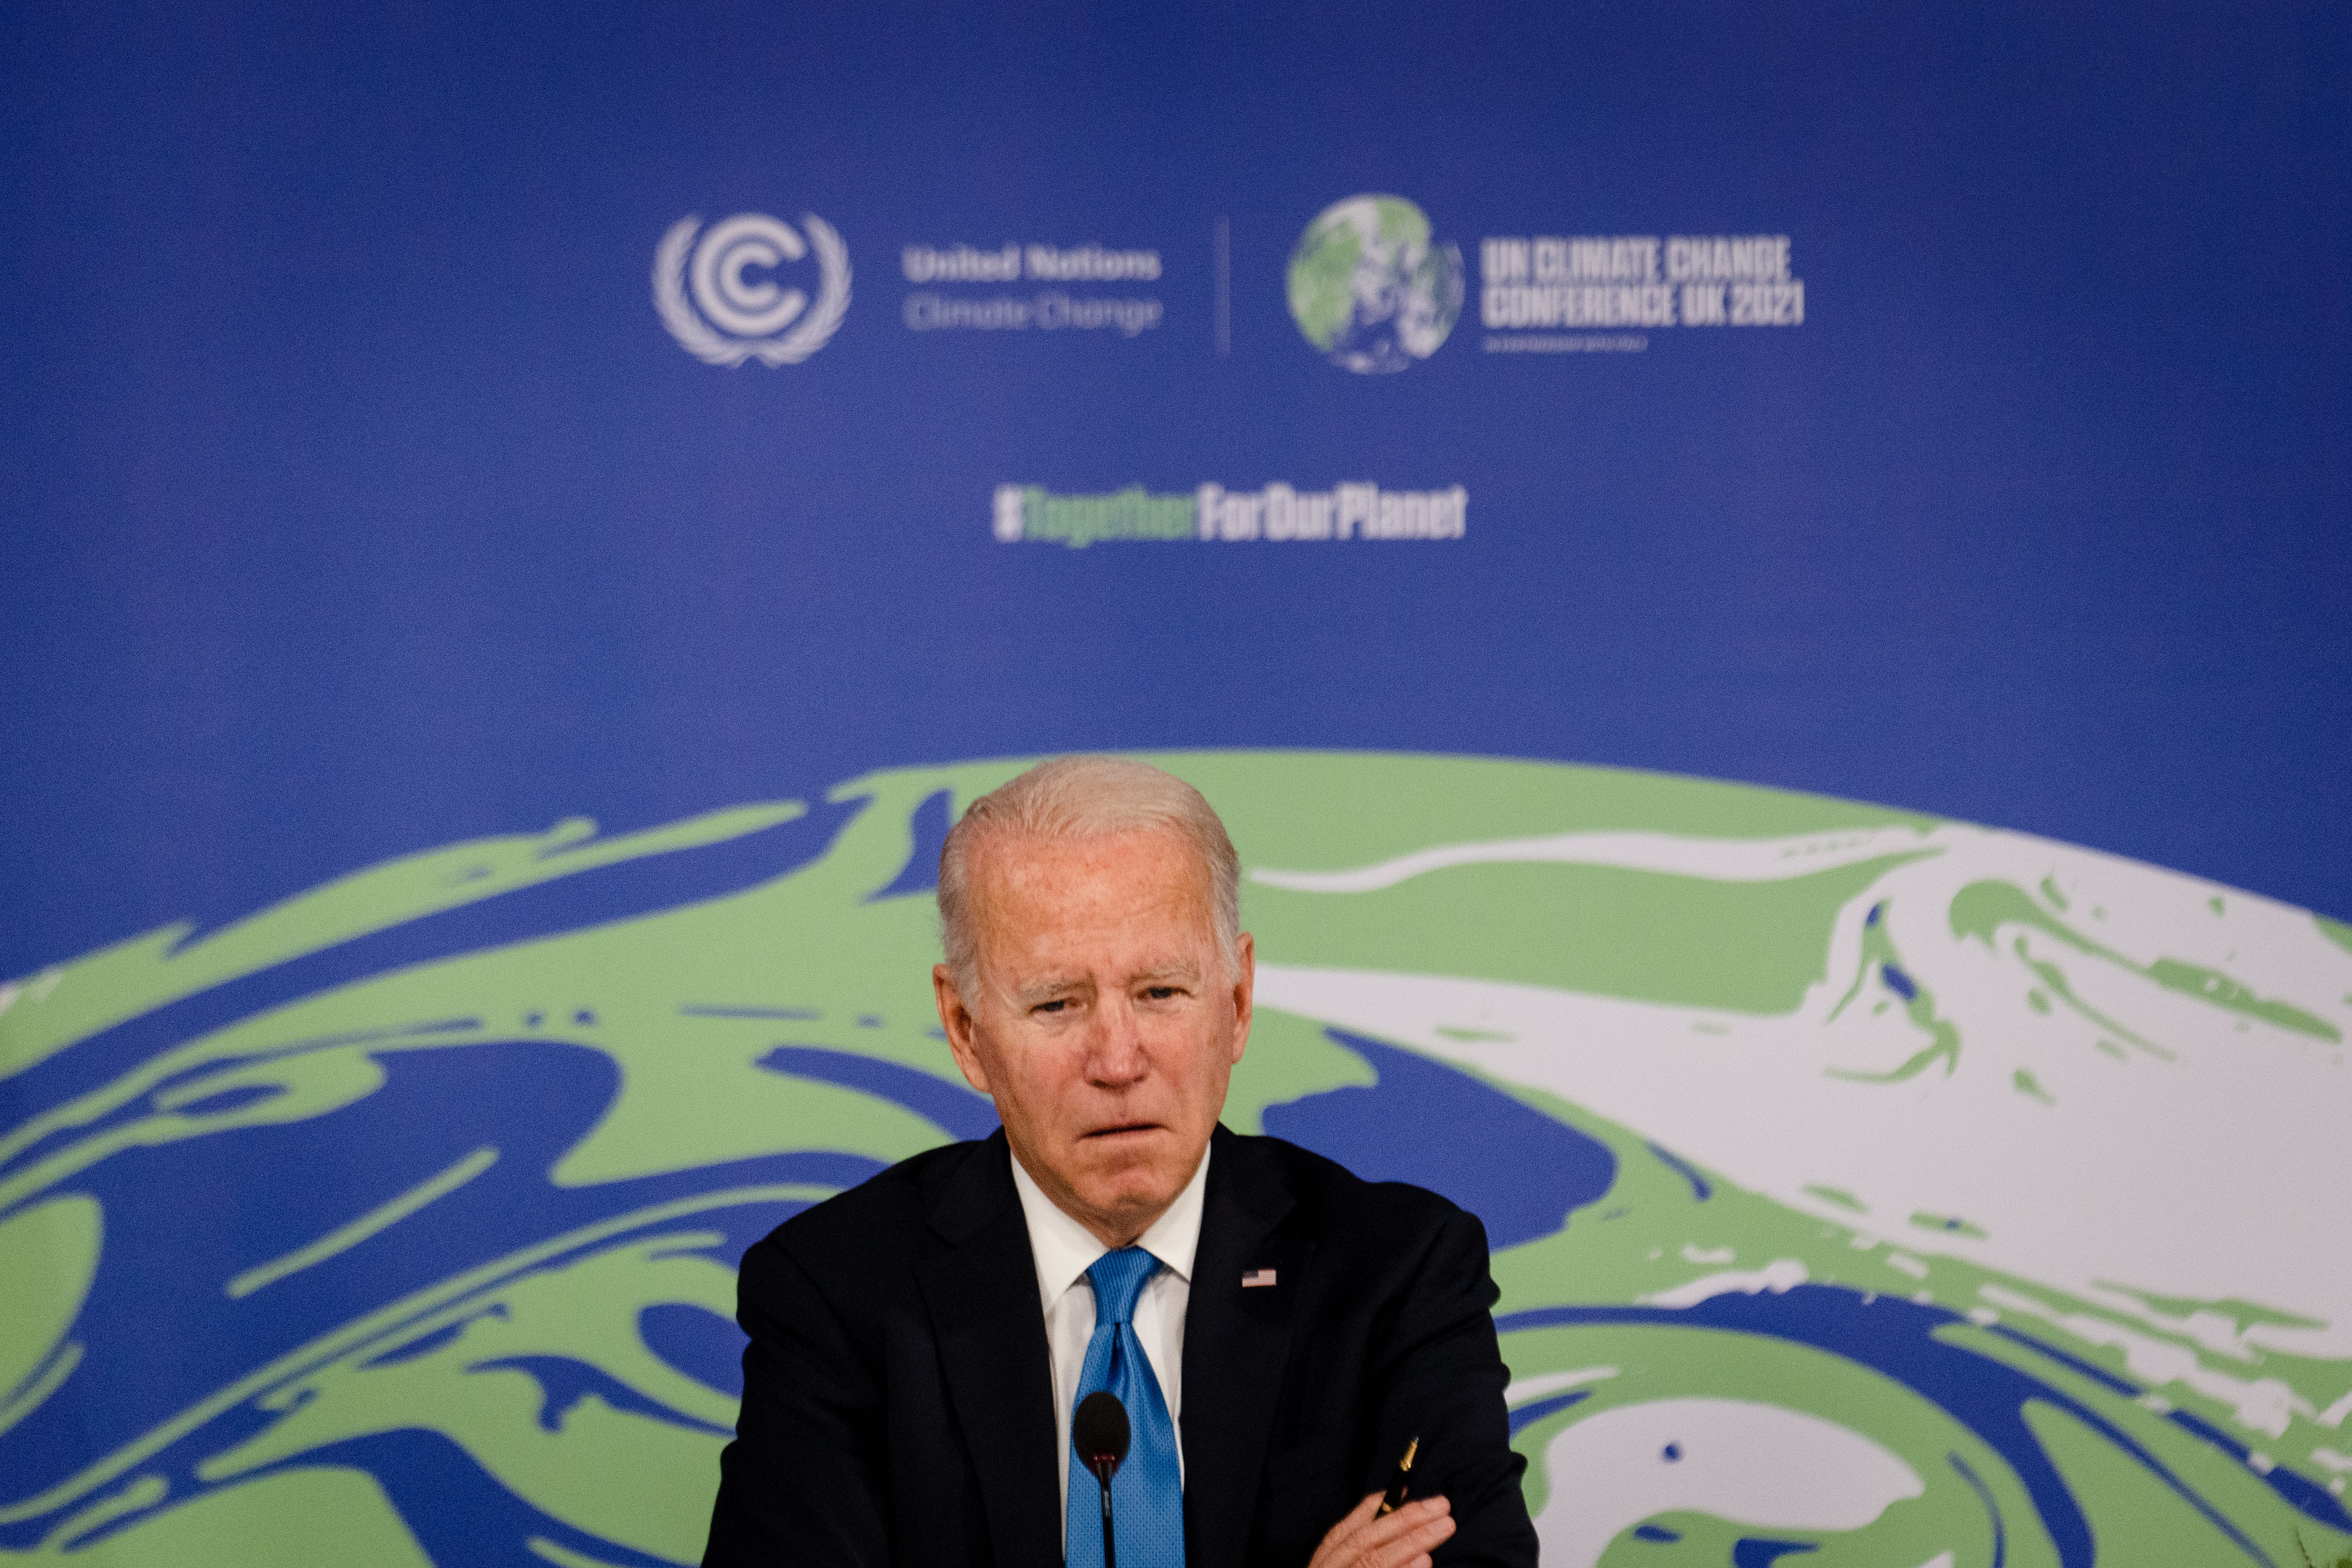 El presidente Joe Biden en la COP26, COP26, la Conferencia de las Naciones Unidas sobre el Cambio Climático, en Glasgow el 2 de noviembre de 2021. (Erin Schaff/The New York Times)